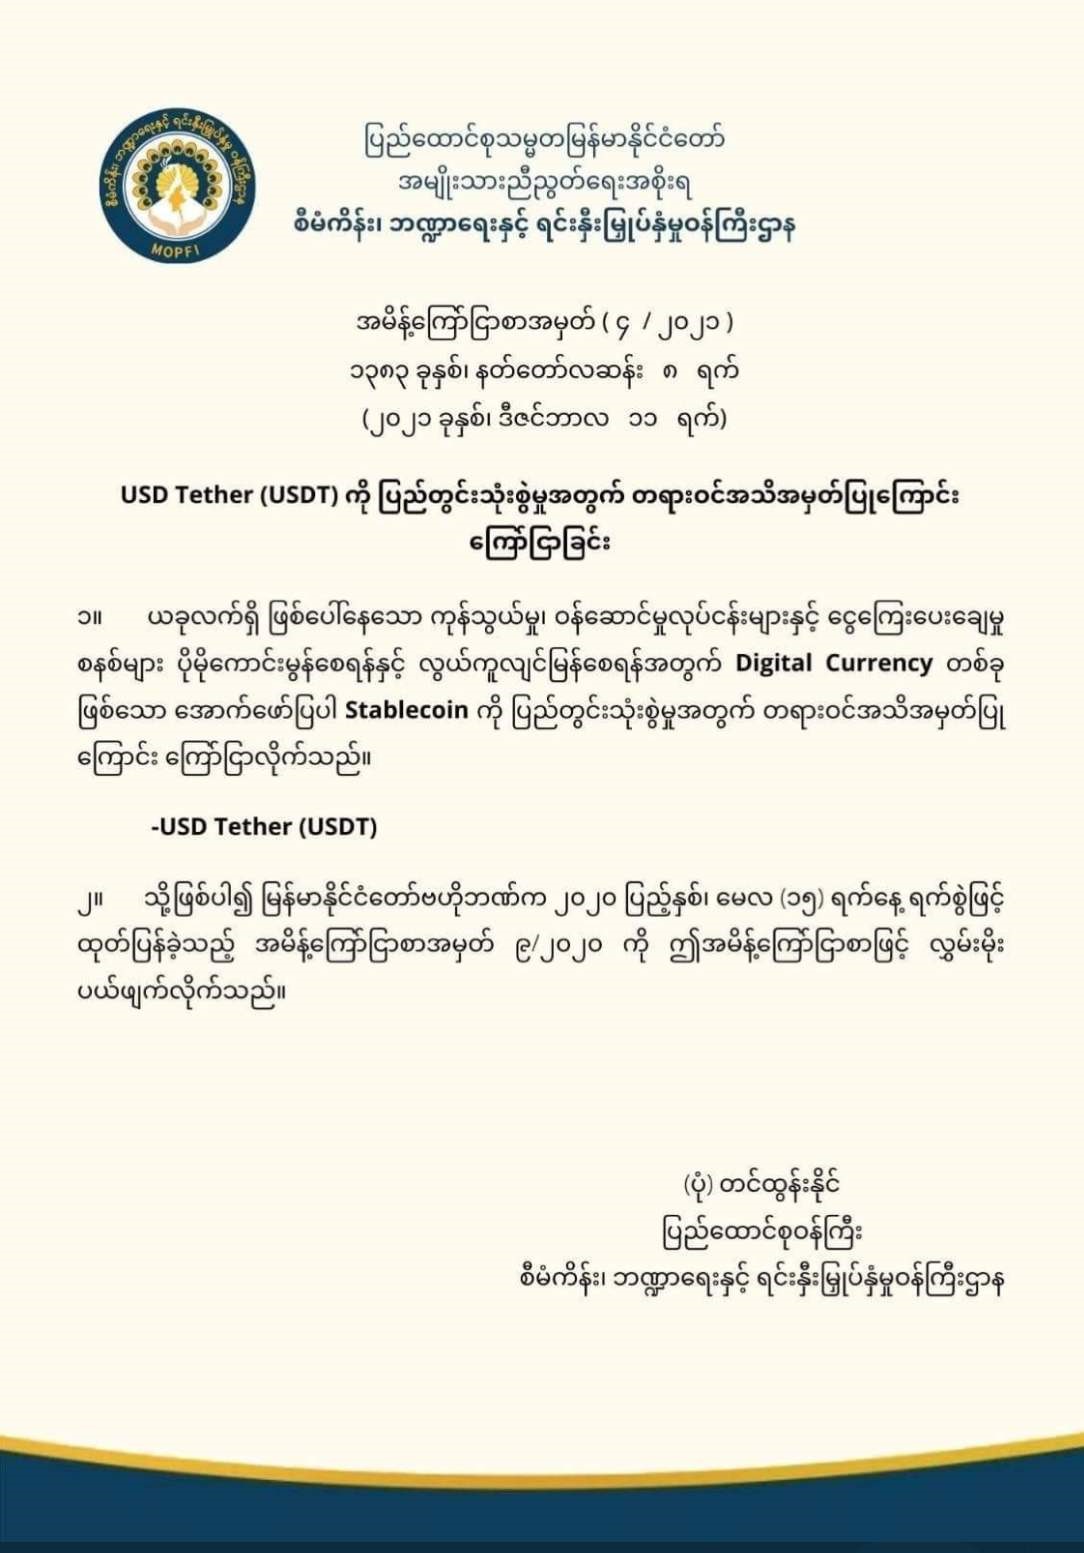 Мьянма признала Tether официальной криптовалютой страны